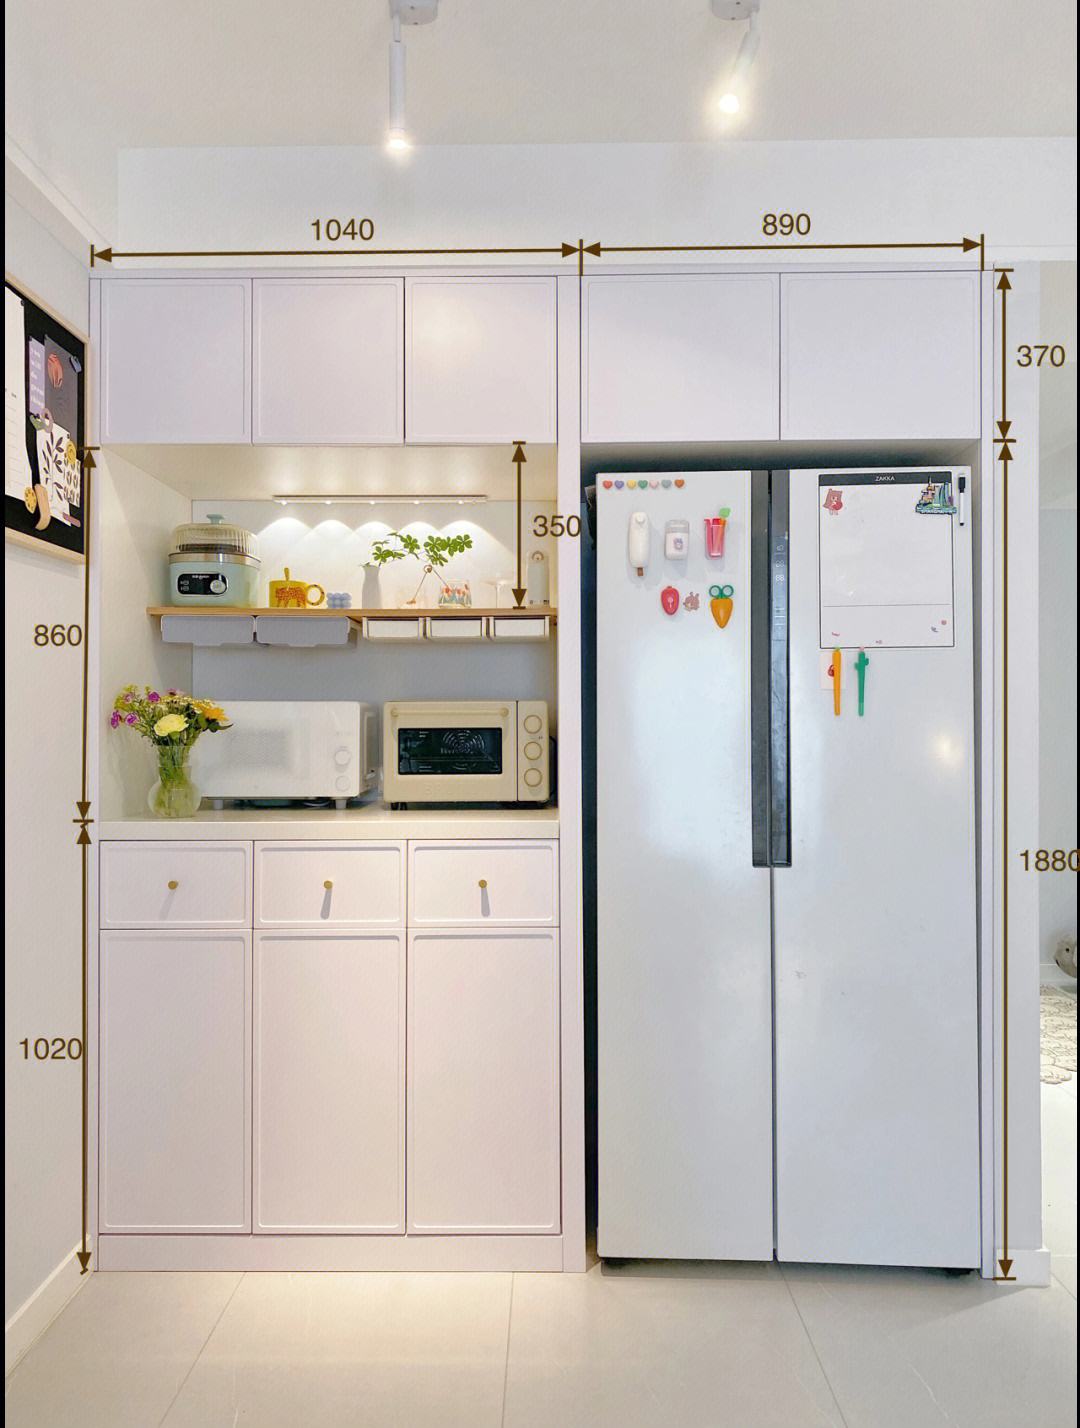 厨房冰箱旁边做柜子可以吗『厨房冰箱旁边做柜子可以吗视频』 